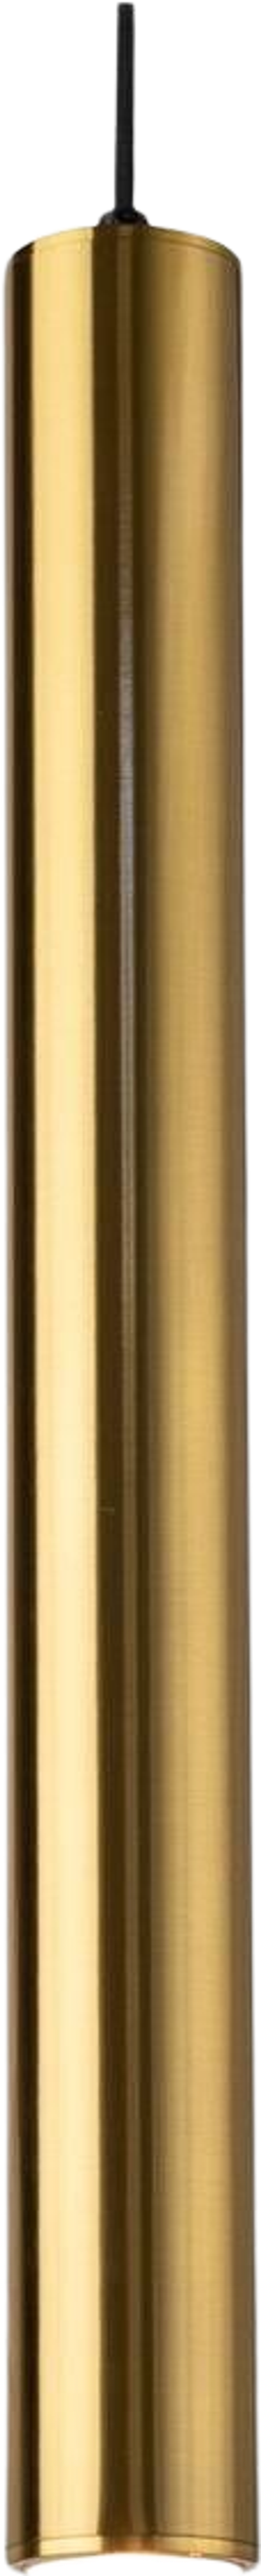 Tilbud på Cordinate pendel lampe H55 cm (NIKKEL ONESIZE) (SINNERUP) fra Sinnerup til 649 kr.